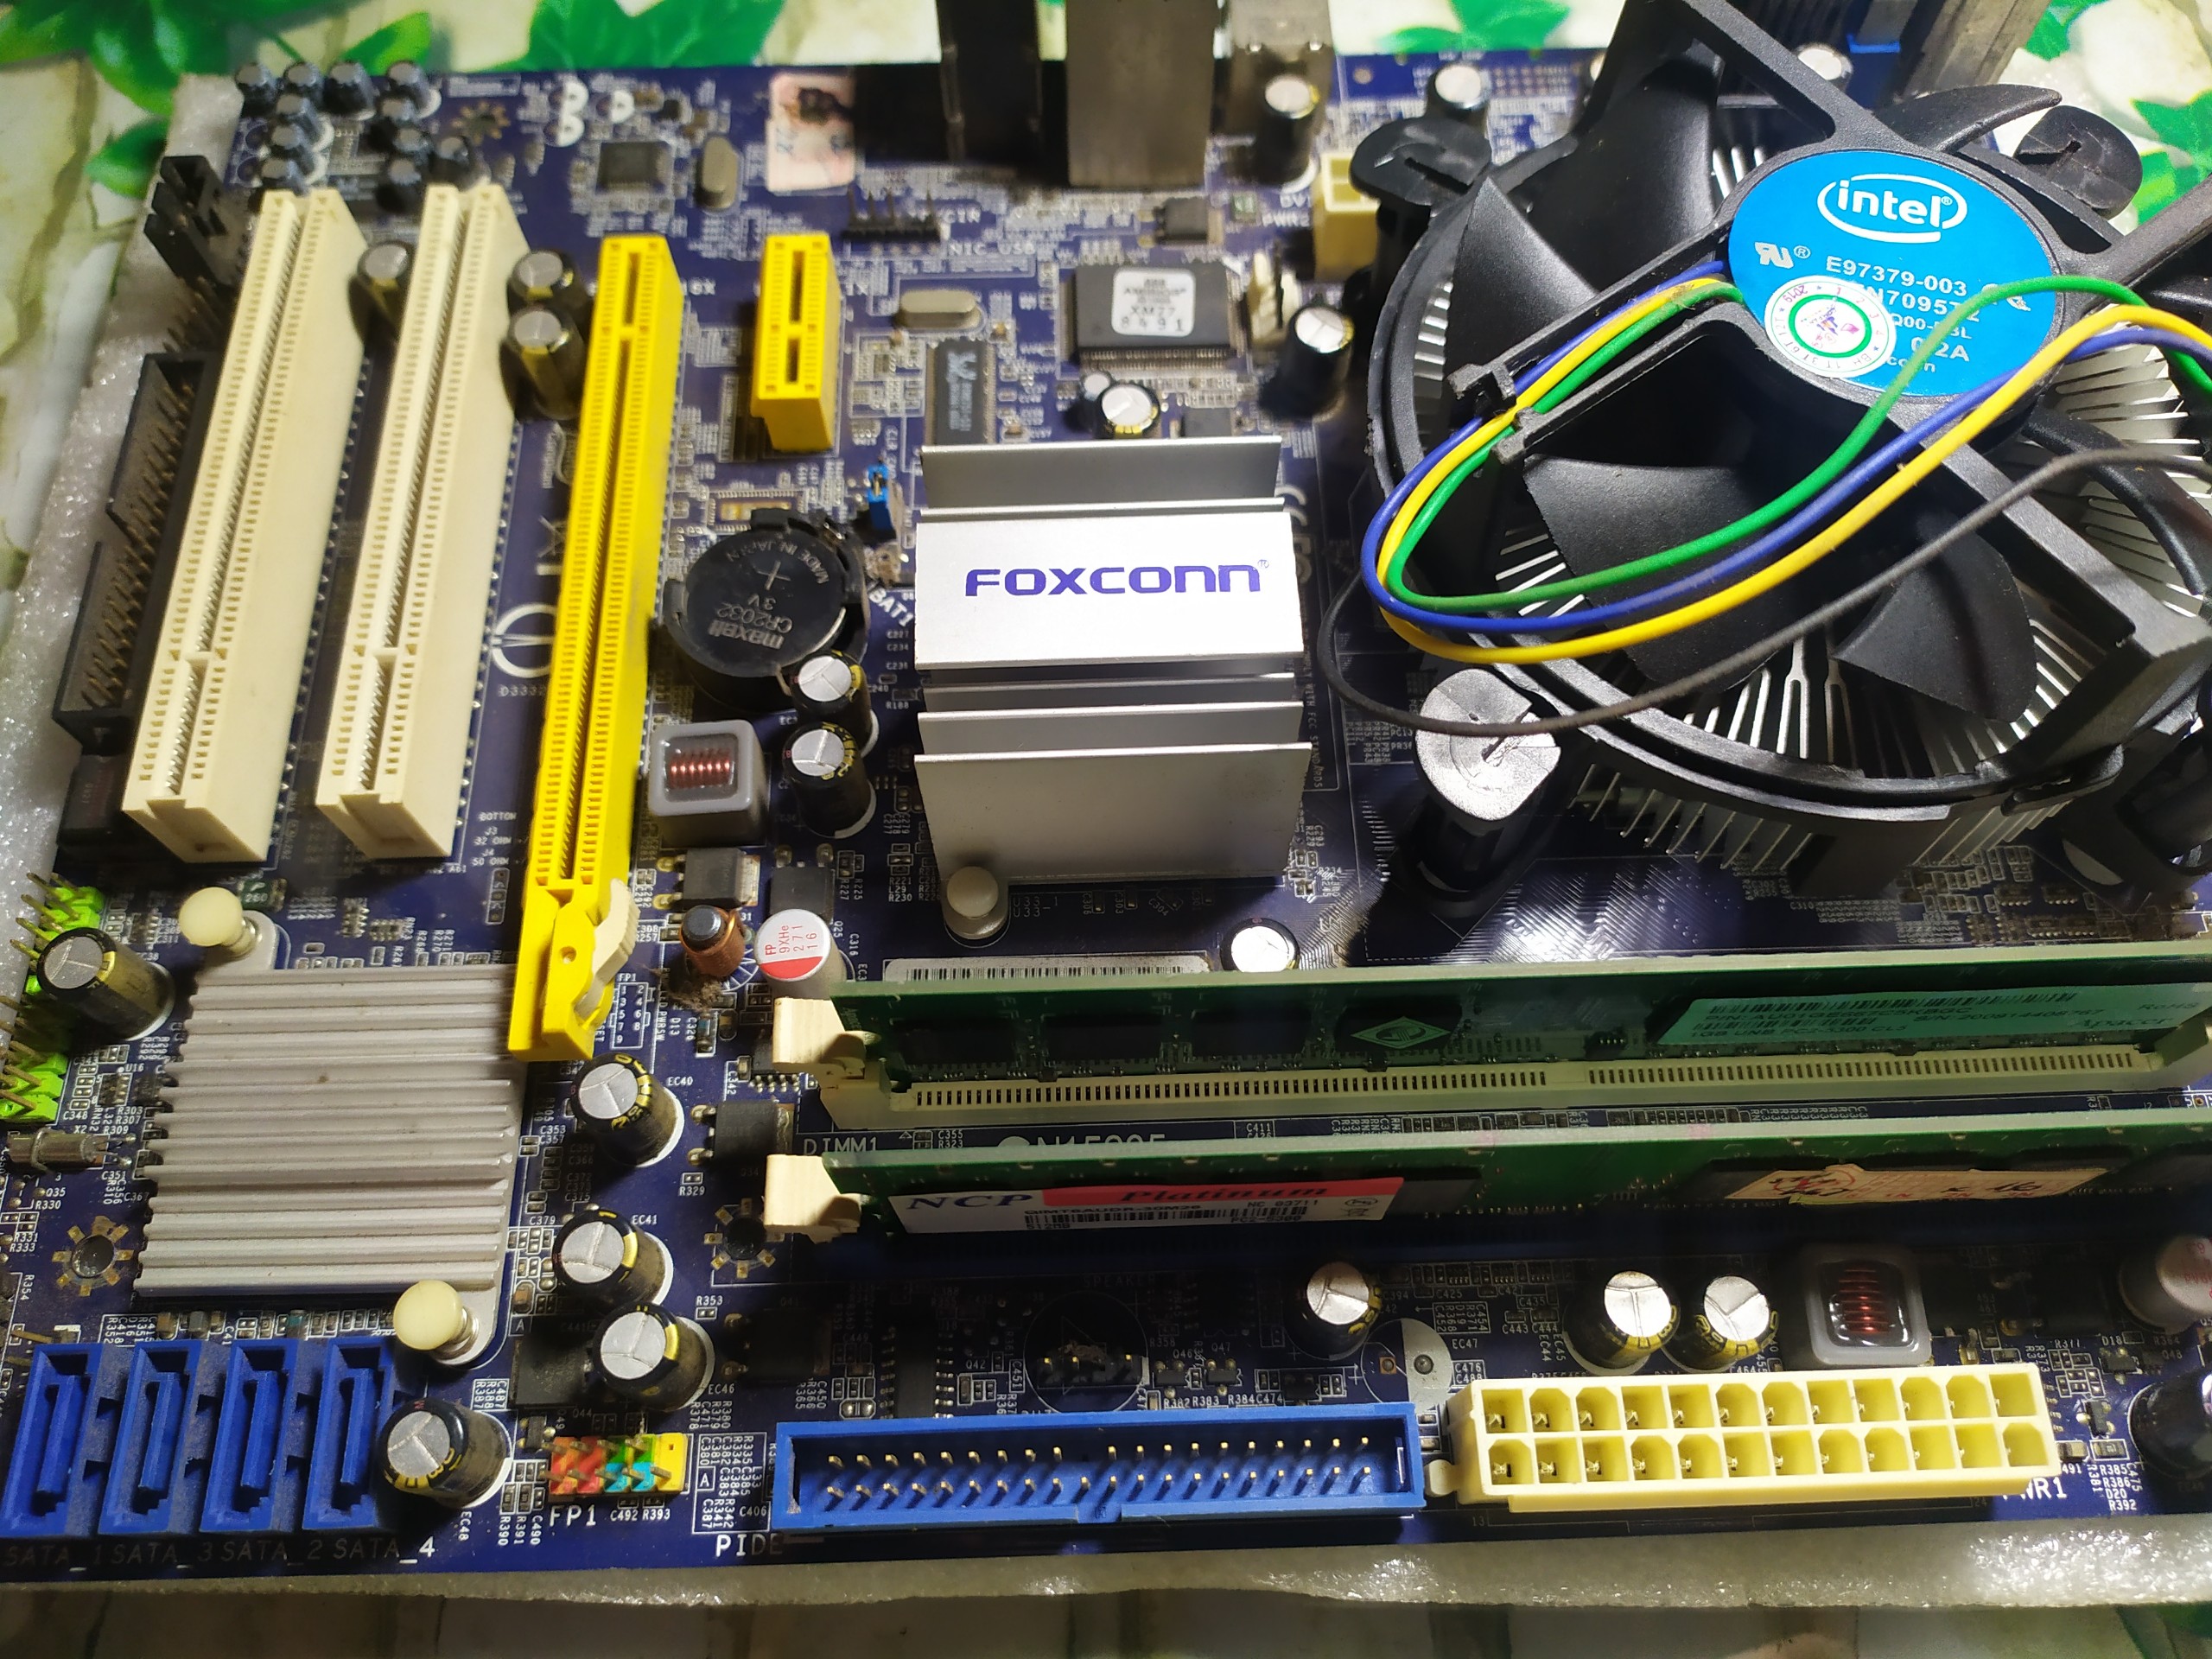 Xác Main Foxconn G41 Socket 775 Dd2 1,5G CPU - Full Main không lên hình